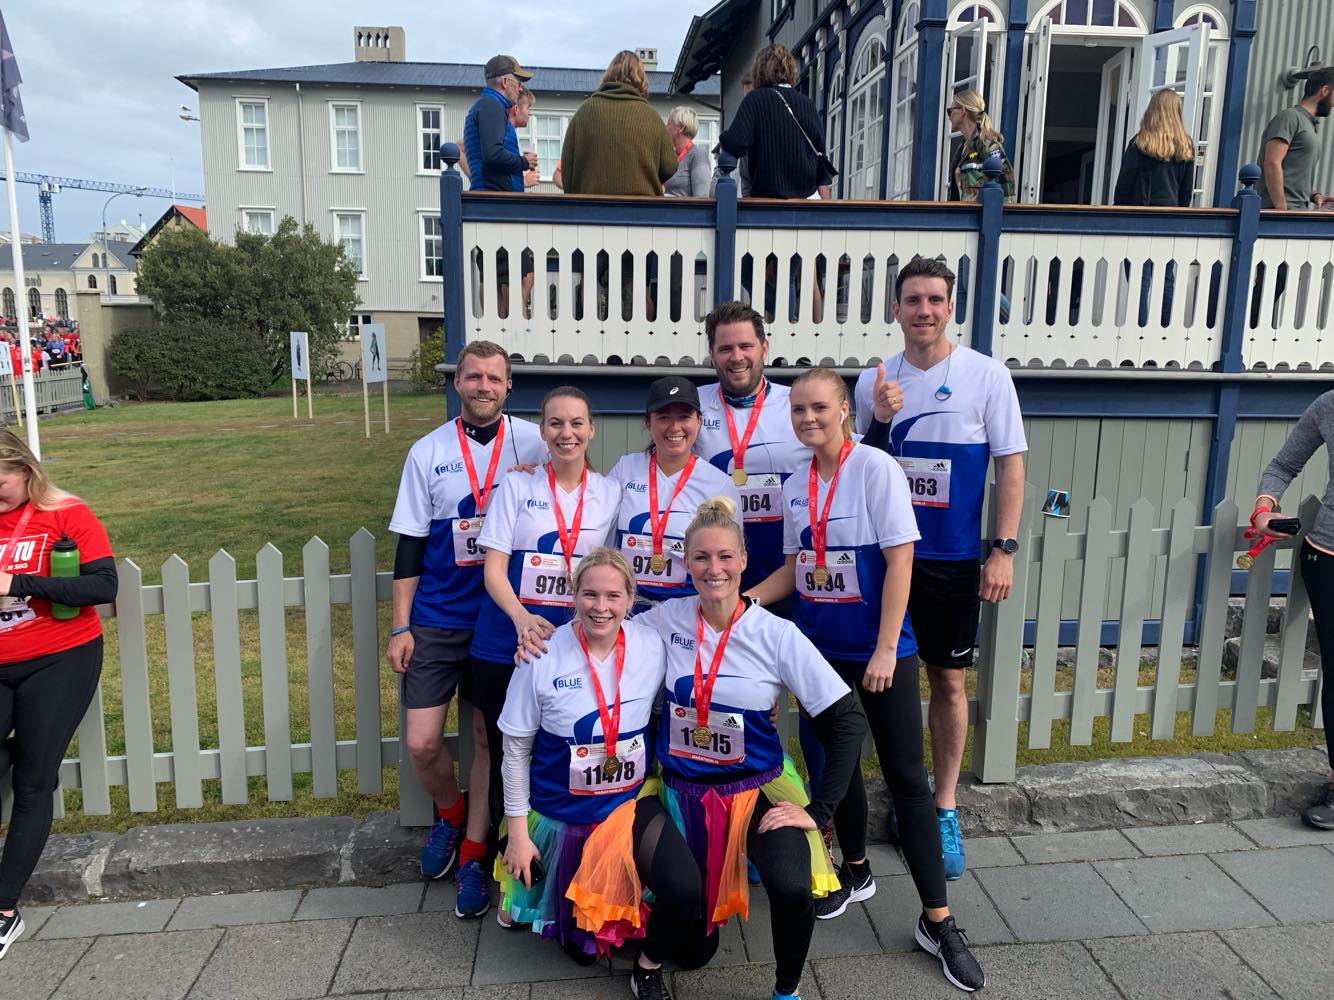 Blue staff competed in Reykjavik marathon to support sick children